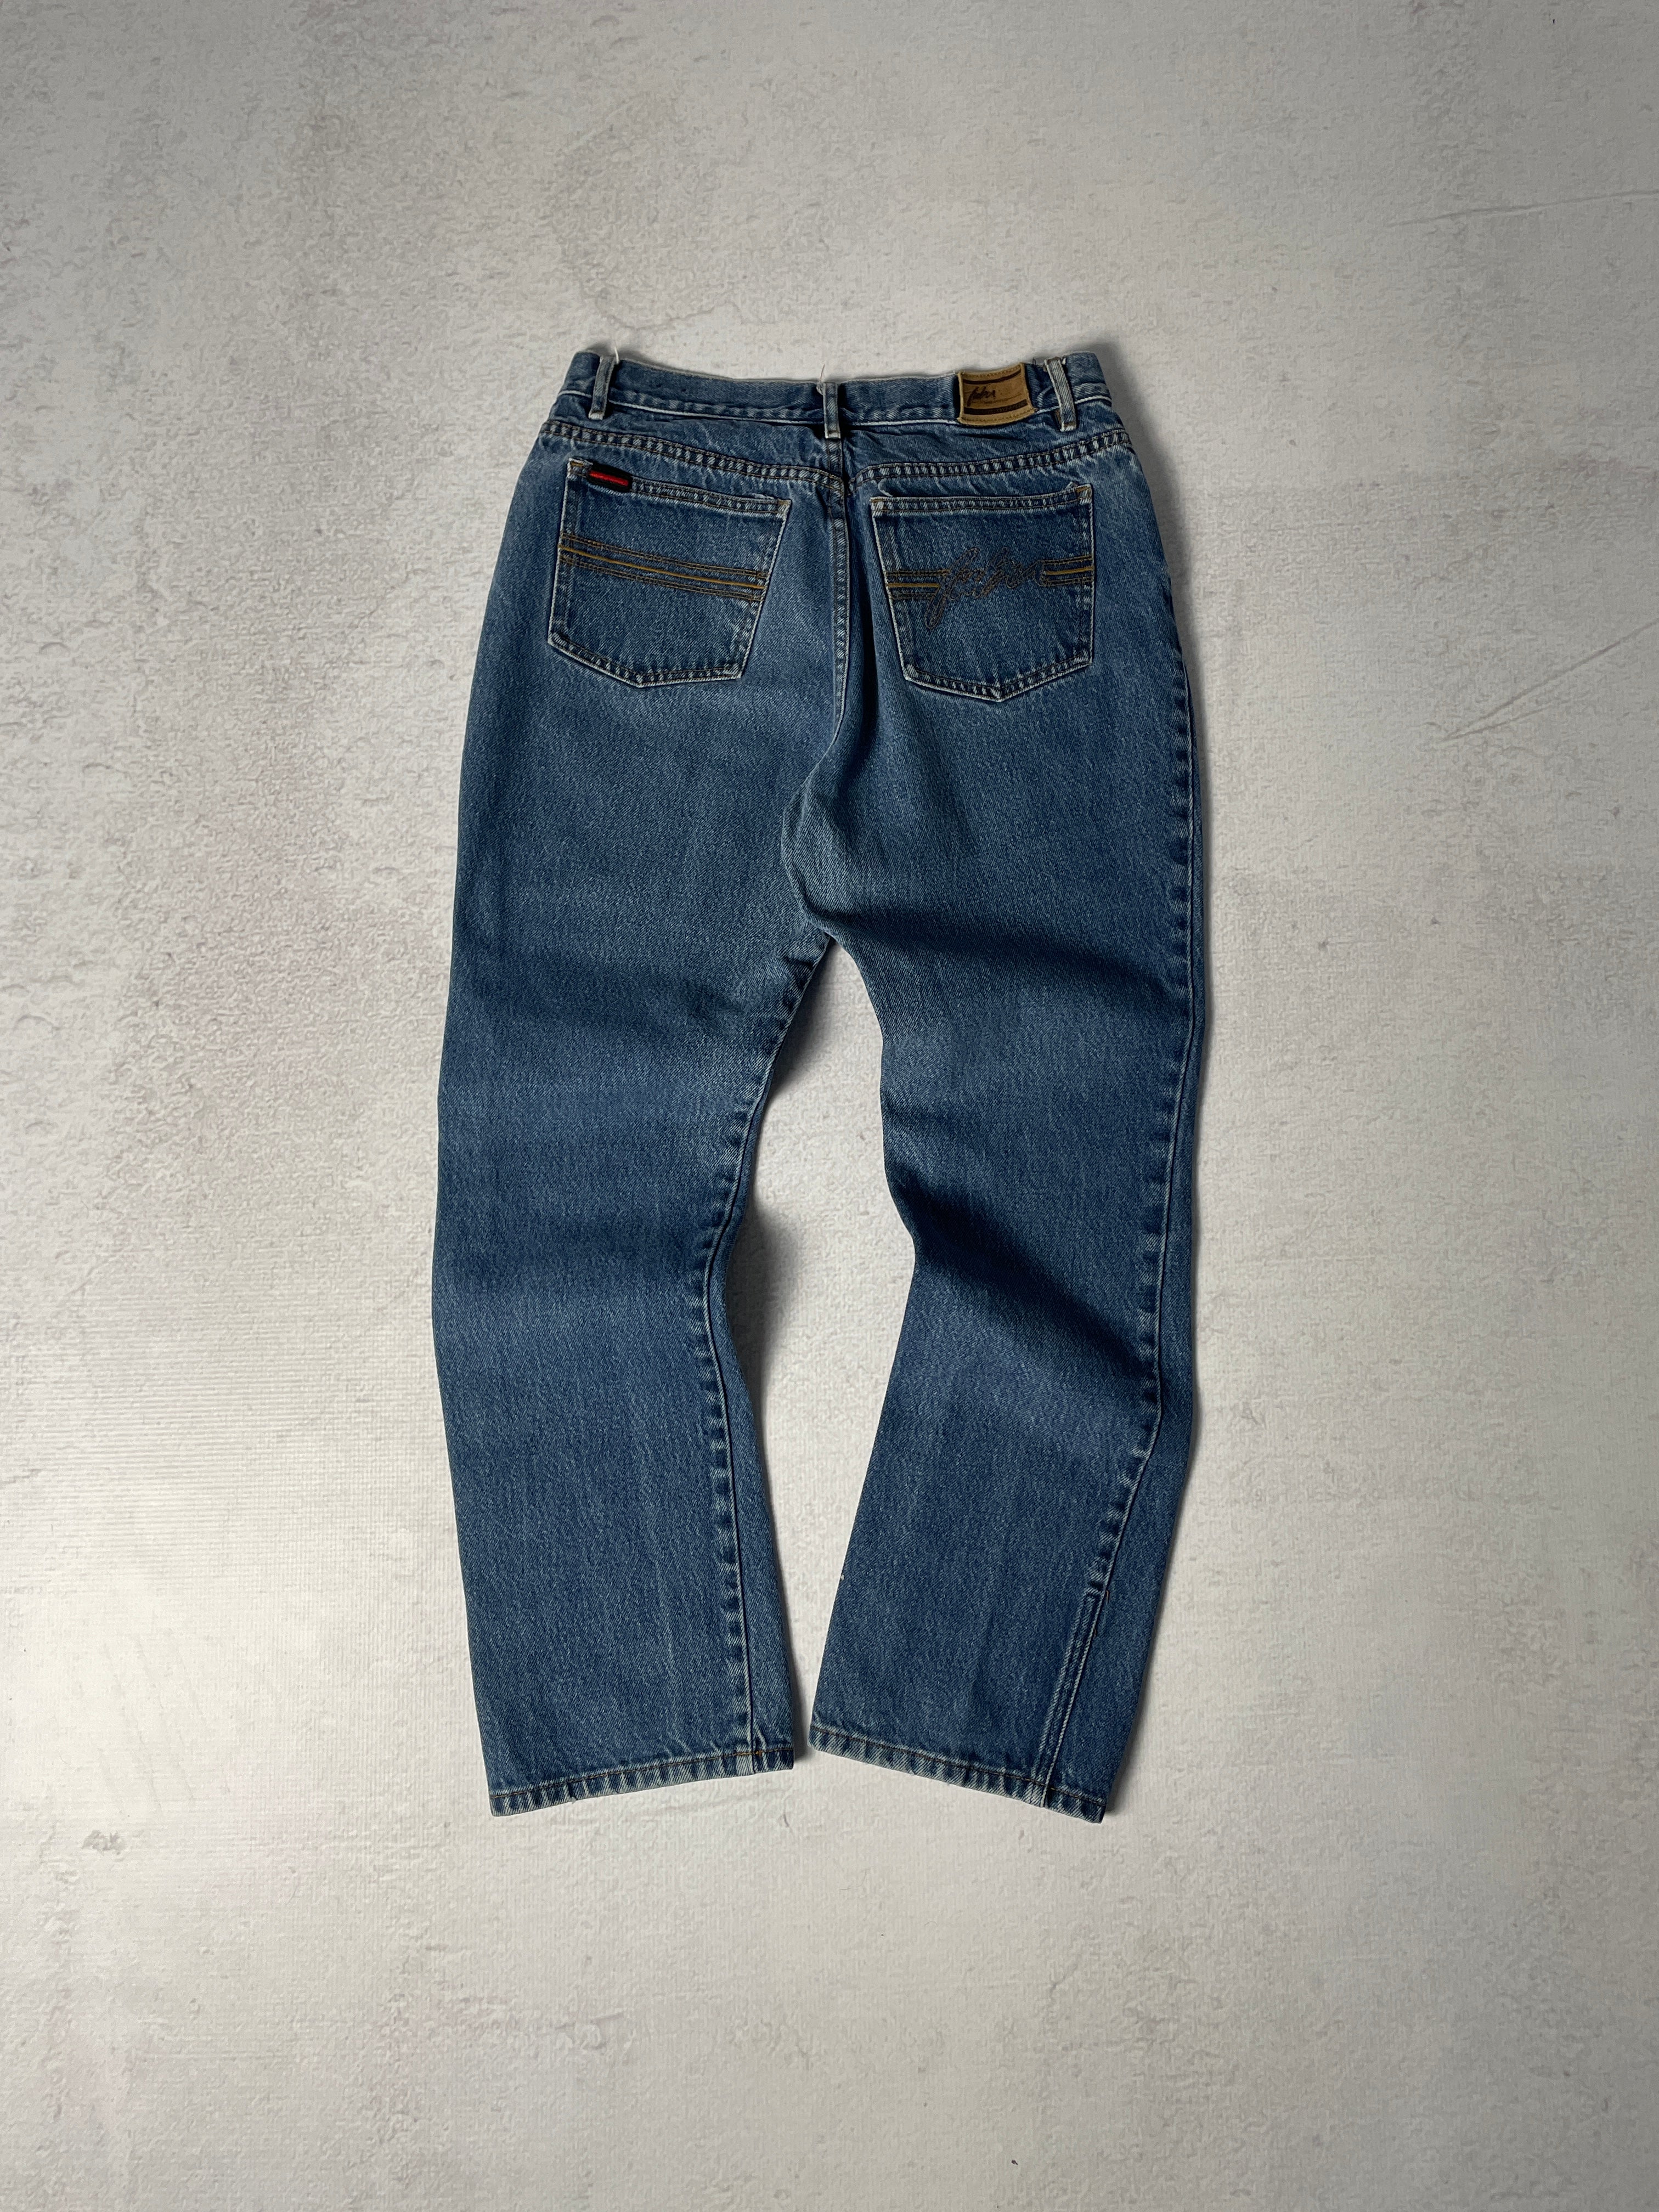 Vintage Fubu Jeans - Women's 30 x 30